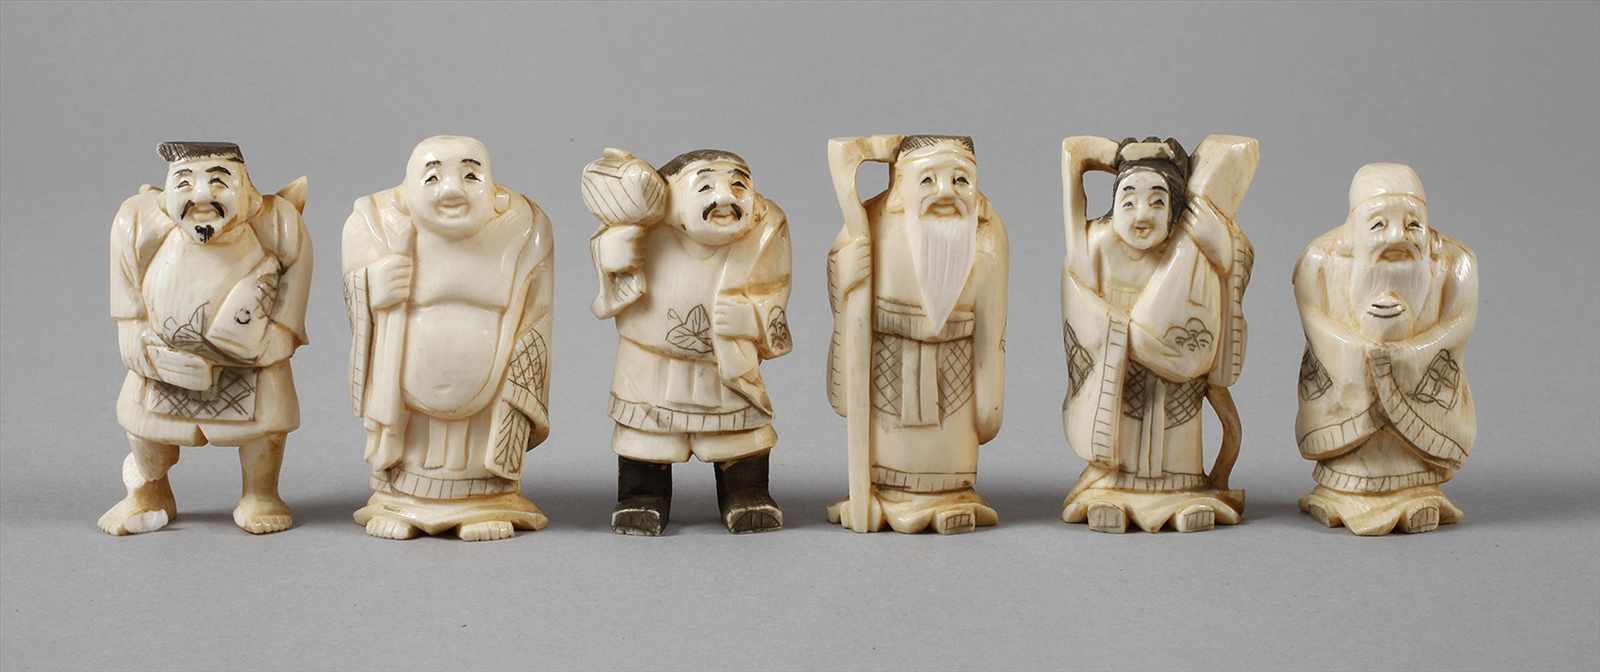 Sechs Elfenbein FigurenChina, 1. Hälfte 20. Jh., signiert, Elfenbein fein beschnitzt, teils graviert